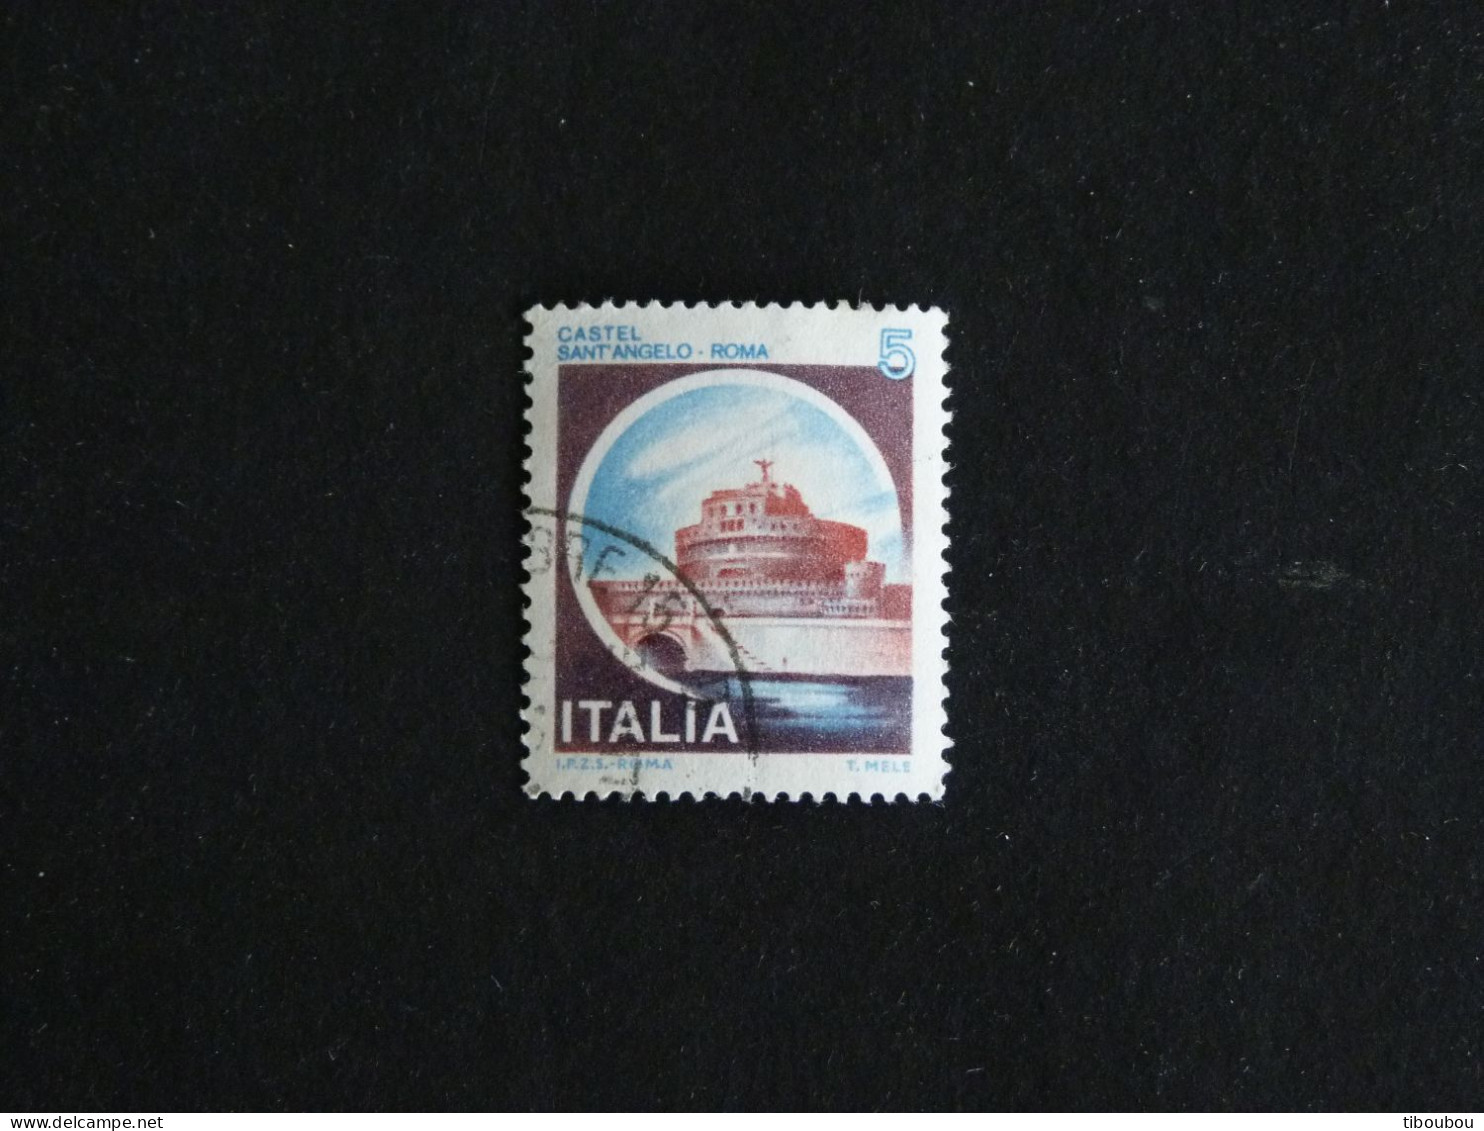 ITALIE ITALIA YT 1433 OBLITERE - CHATEAU SANT' ANGELO ROME - 1971-80: Oblitérés